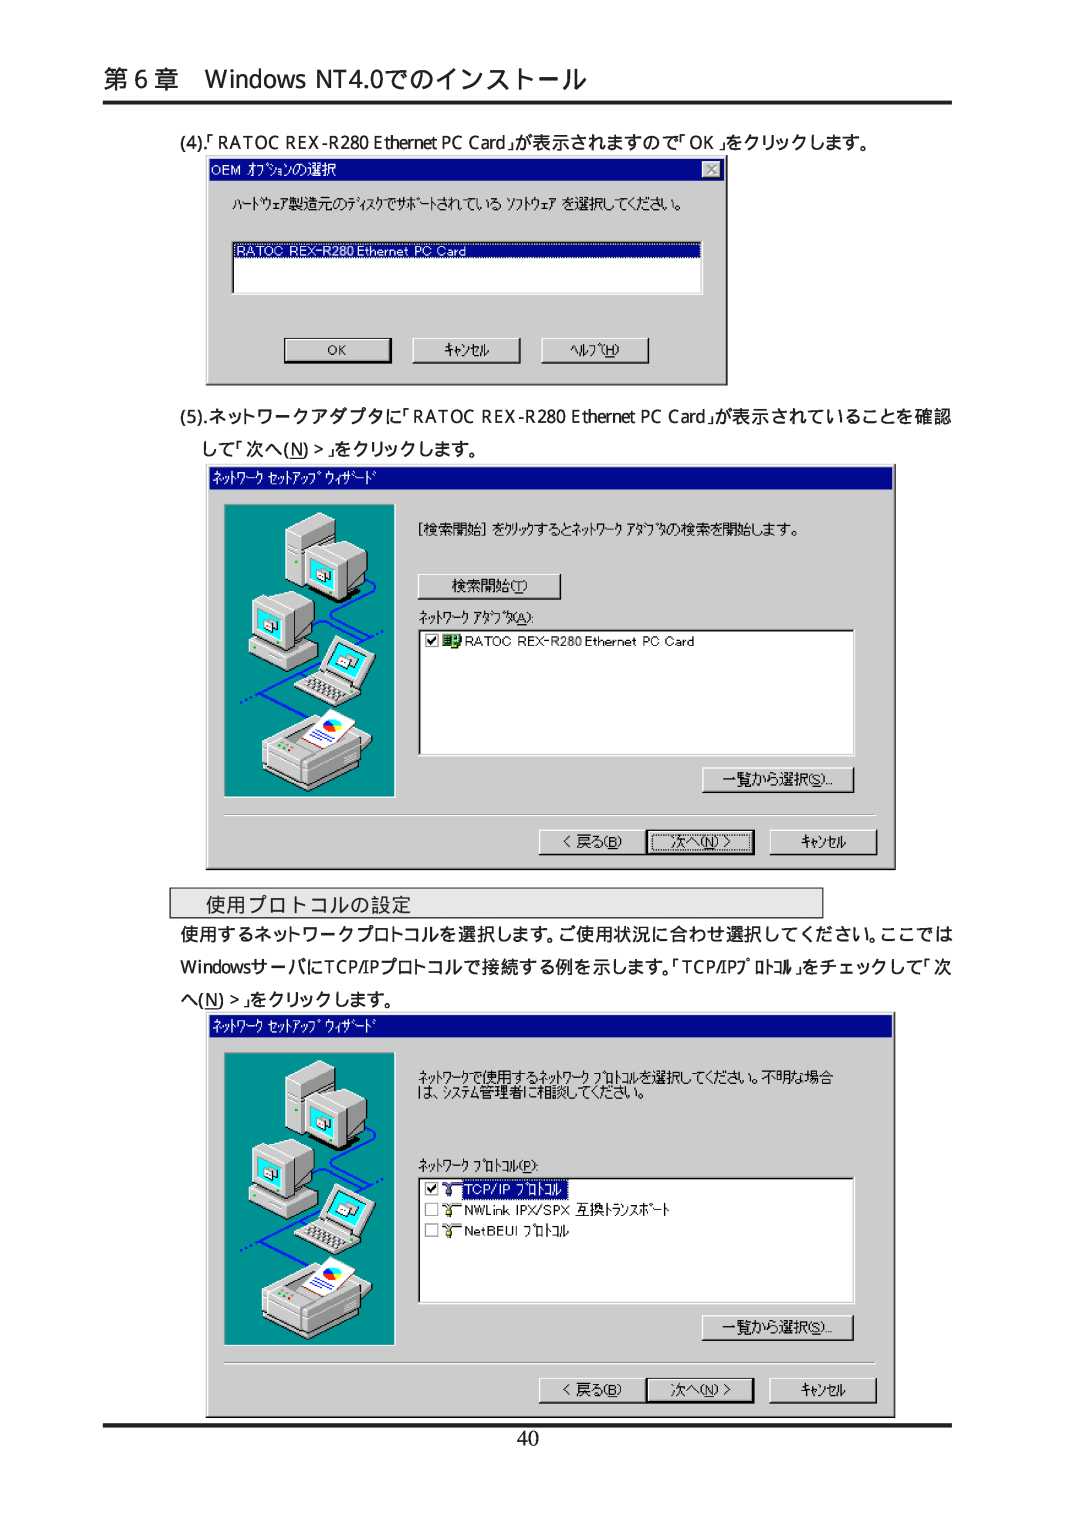 Ratoc Systems manual 第６章 Windows NT4.0でのインストール, 使用プロトコルの設定, 4「. RATOC REX-R280 Ethernet PC Card」が表示されますので「OK」をクリックします。 